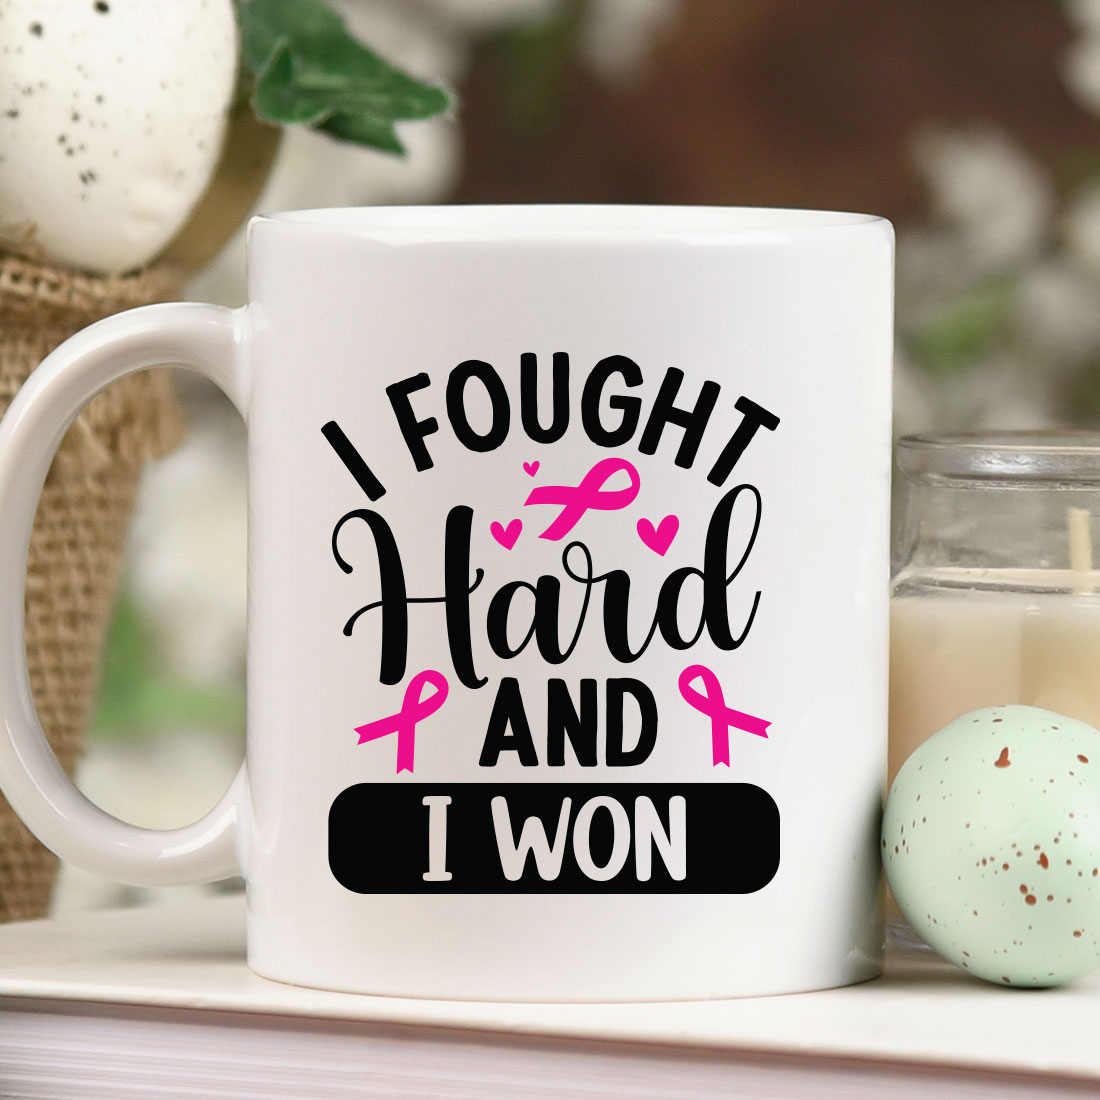 Coffee mug that says i fought hard and i won.